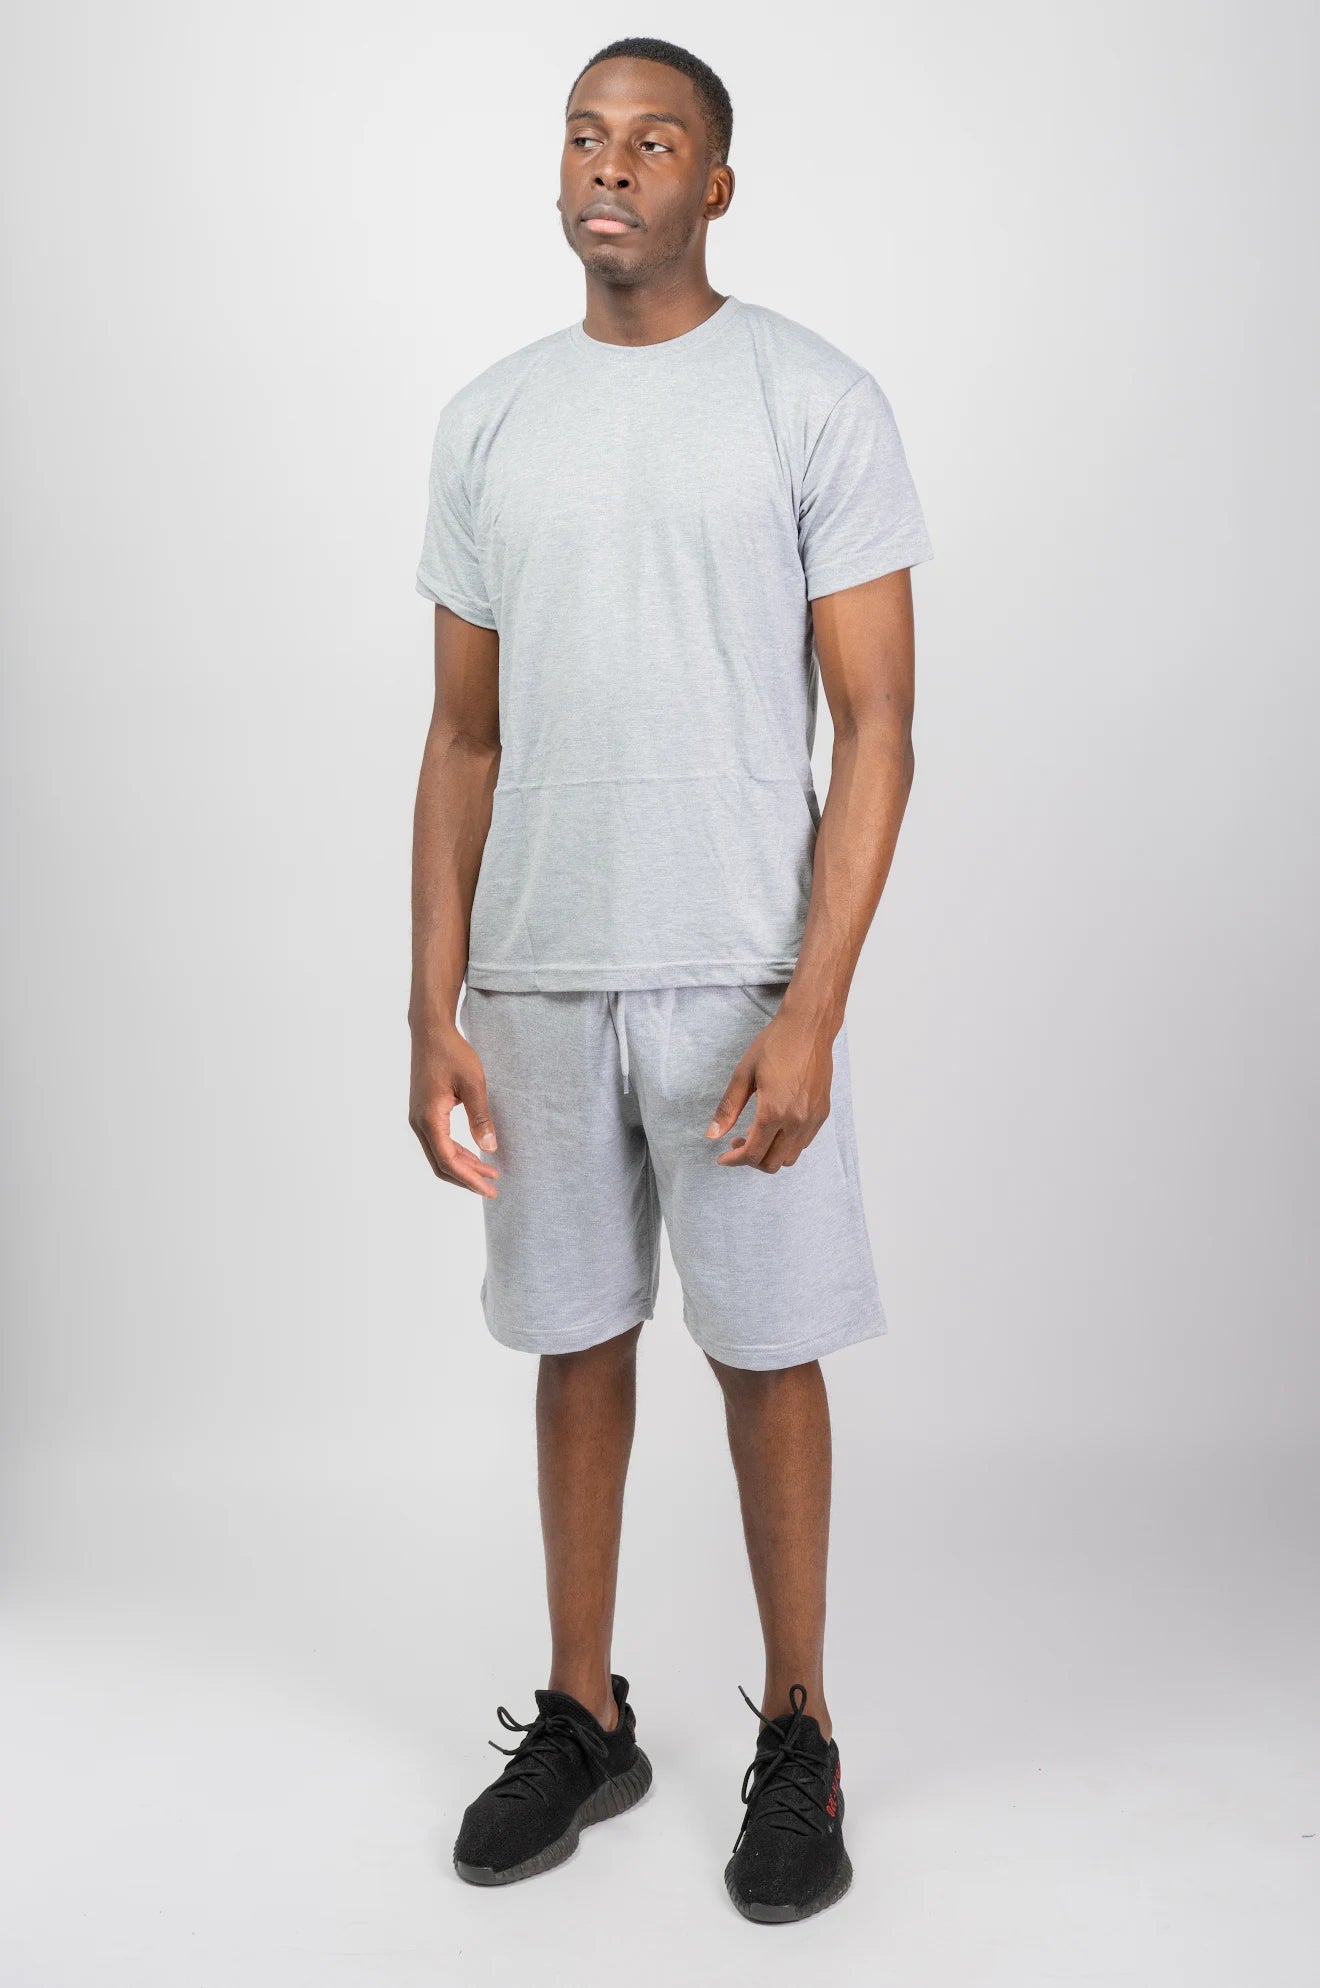 grey t-shirt and short sets